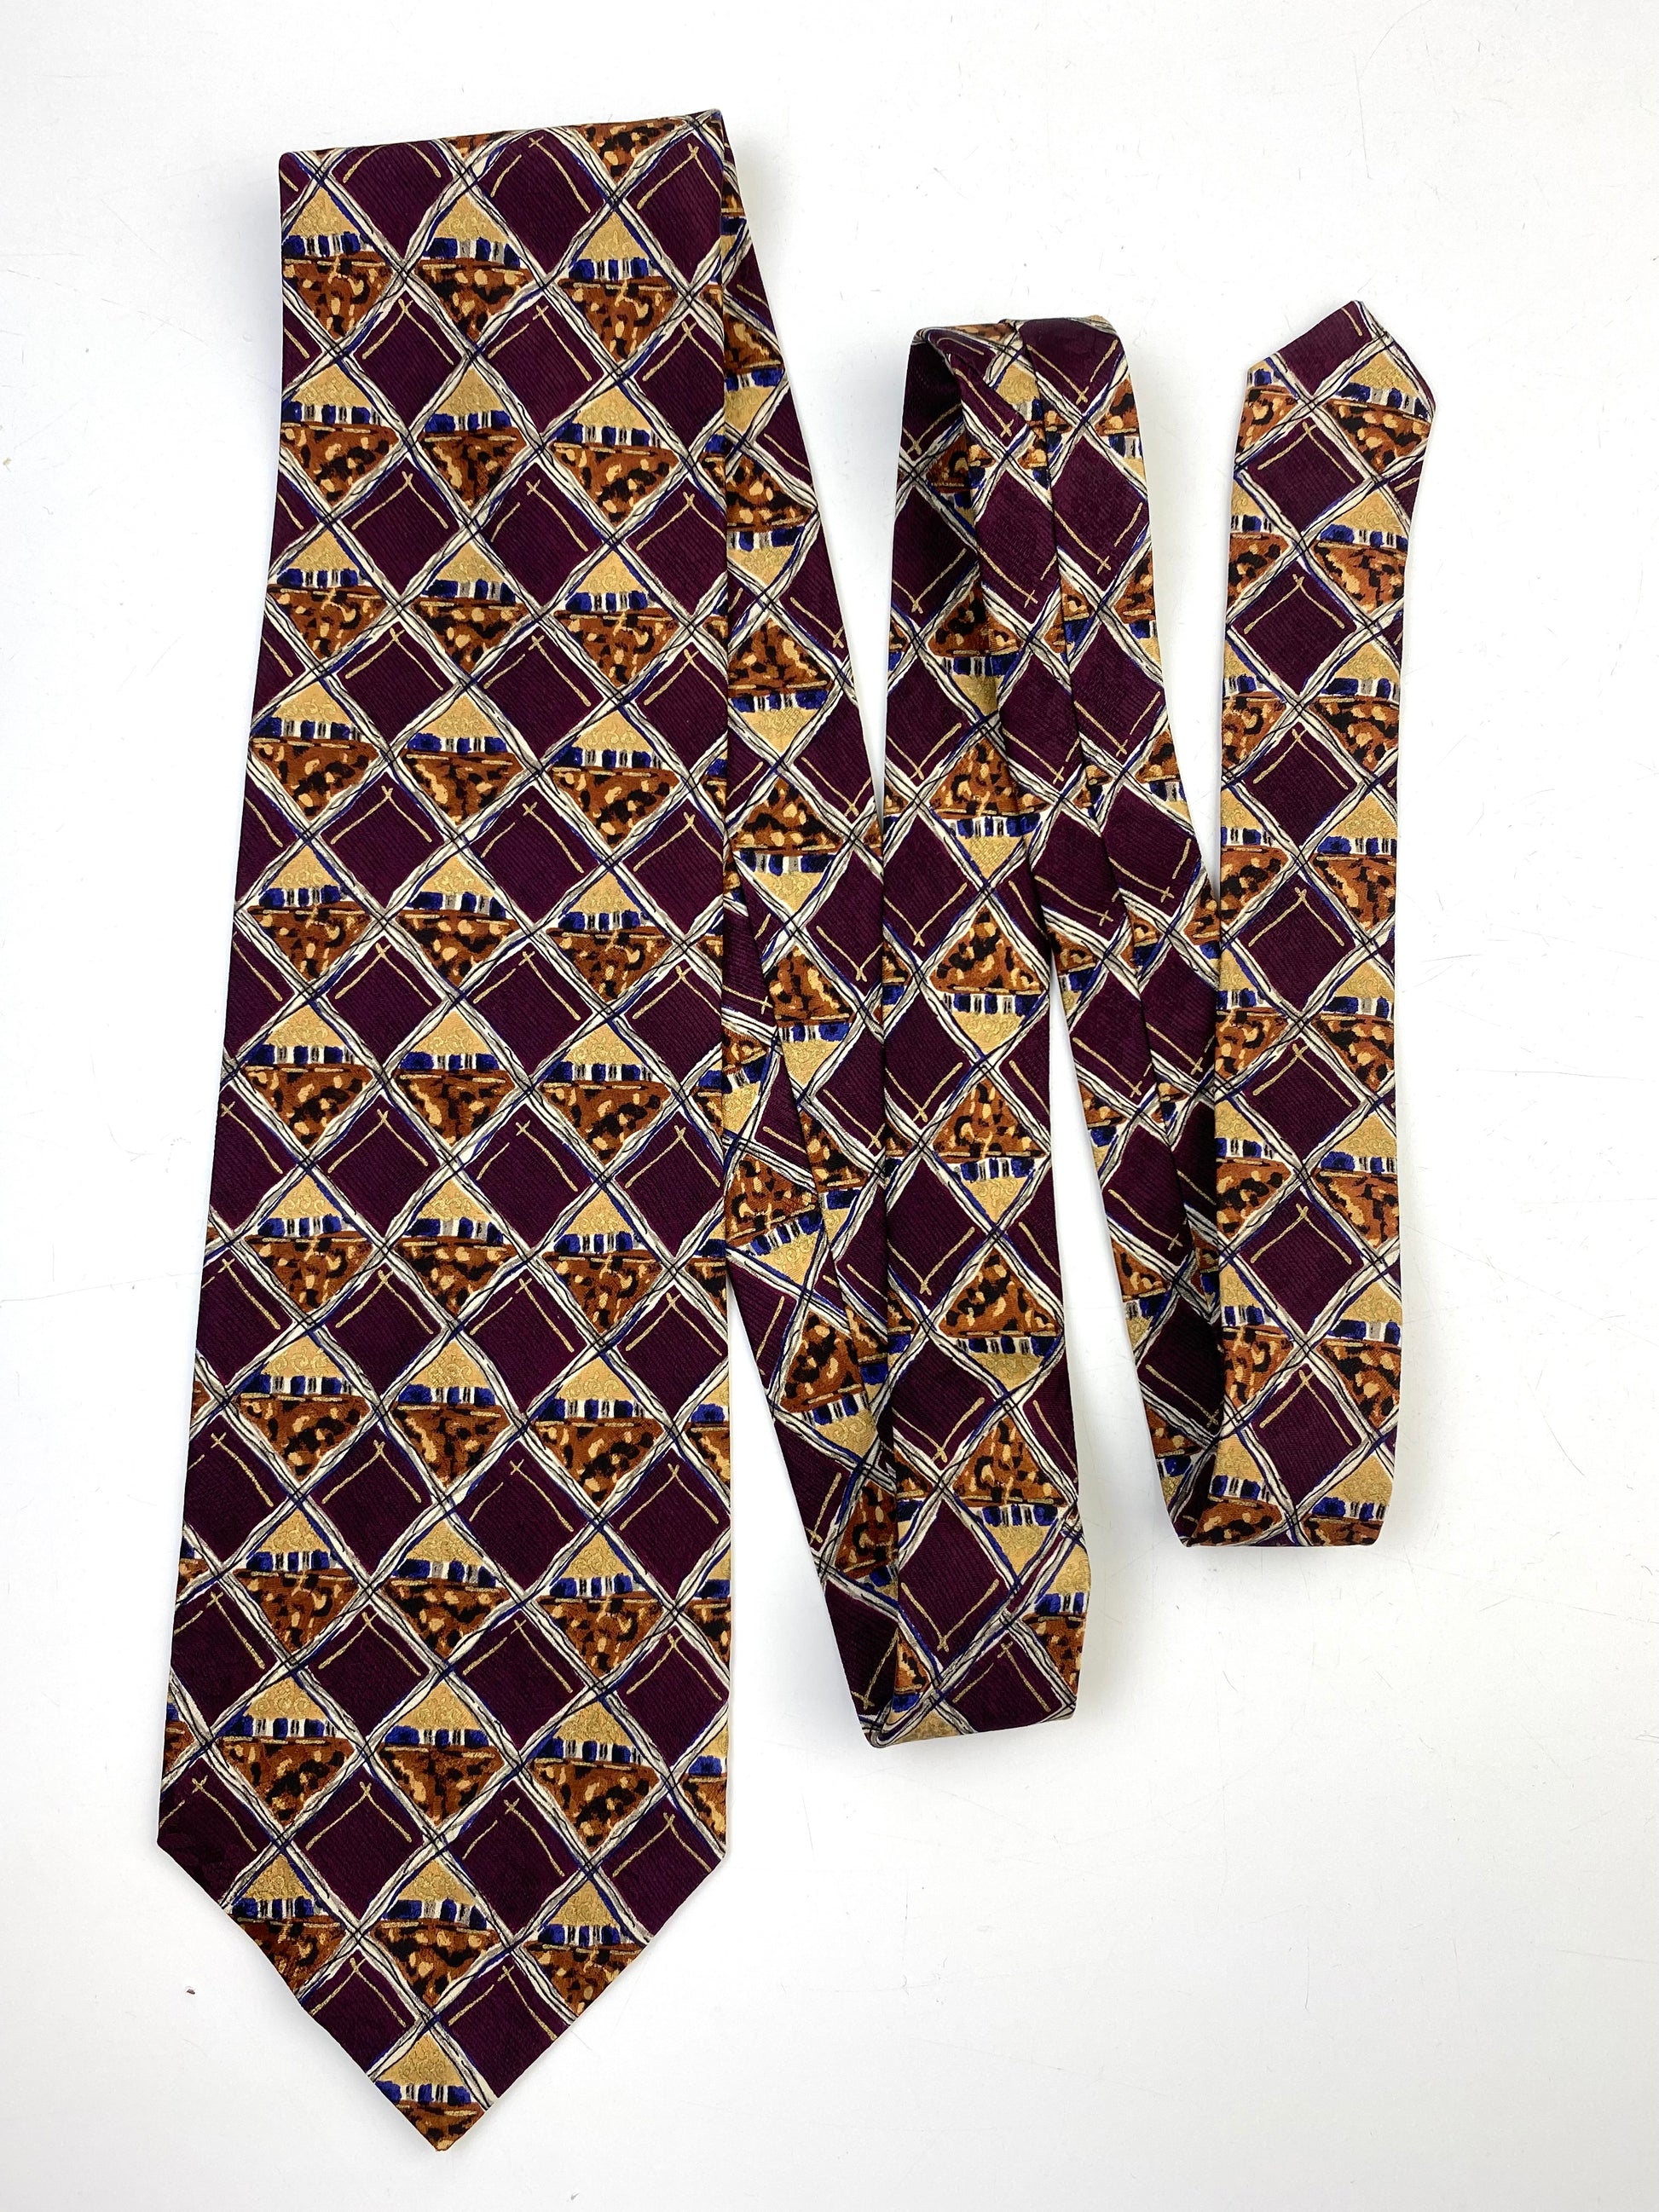 90s Deadstock Silk Necktie, Vintage Plum/ Gold Check Pattern Tie, NOS